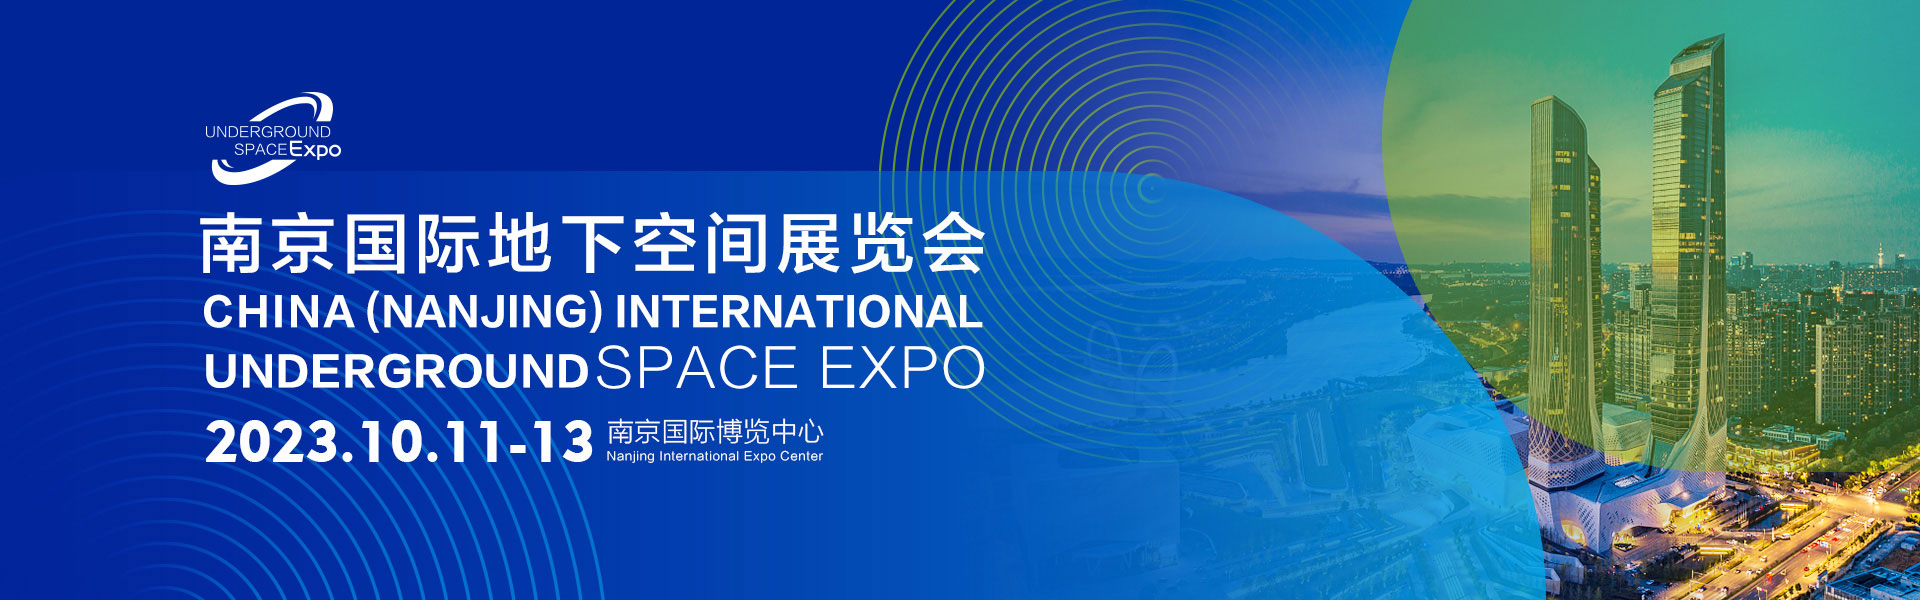 南京国际地下空间展览会